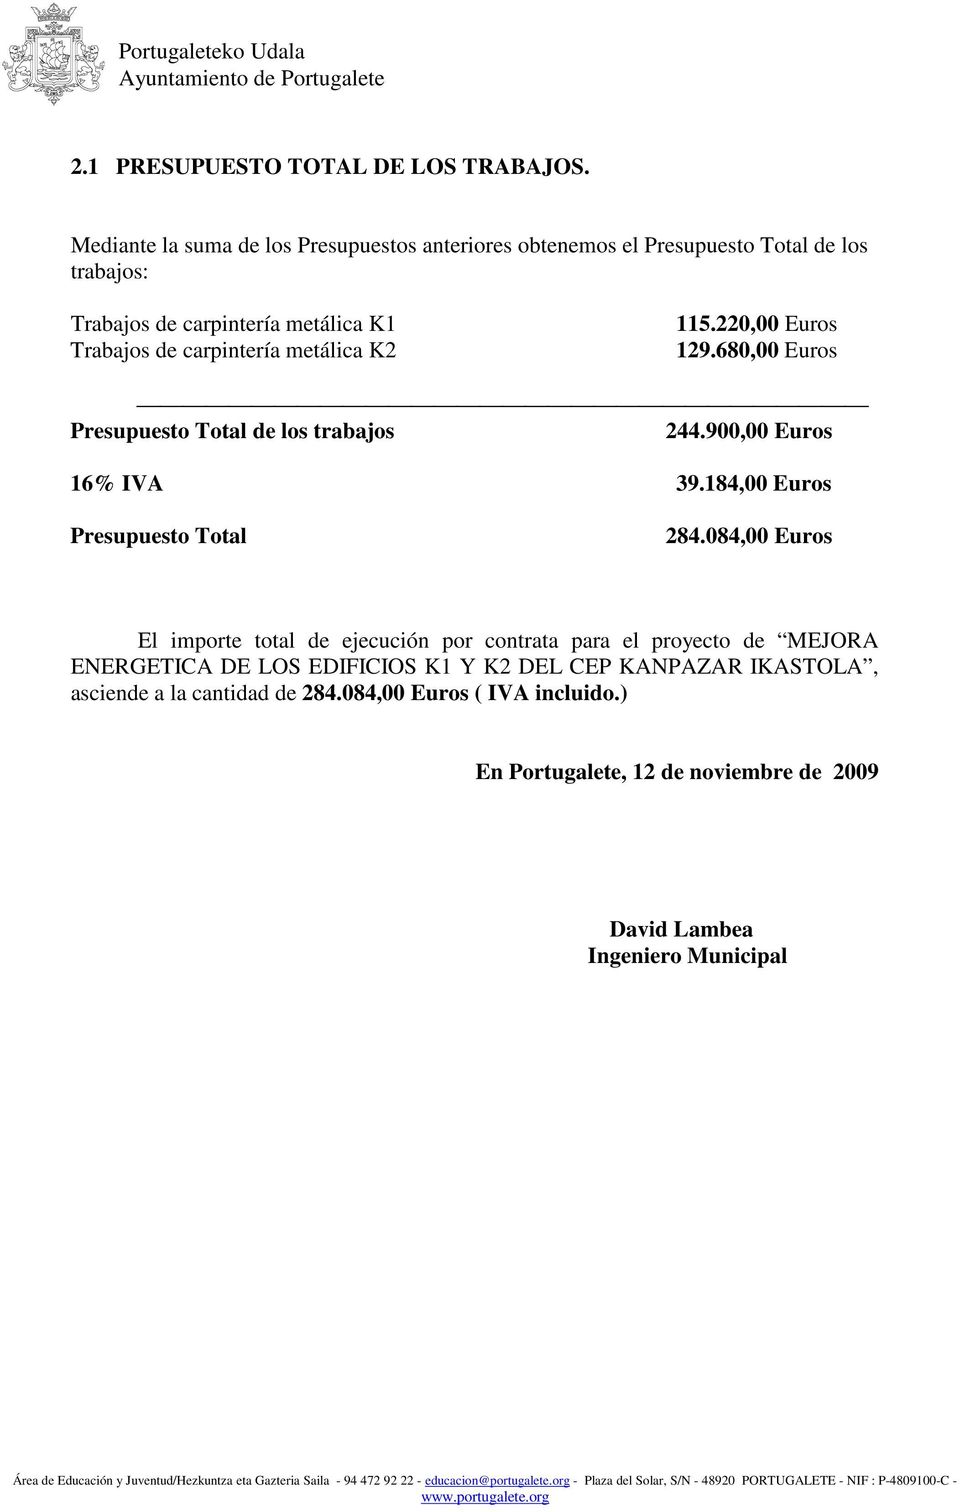 carpintería metálica K2 5.220,00 Euros 29.680,00 Euros Presupuesto Total de los trabajos 244.900,00 Euros 6% IVA 39.84,00 Euros Presupuesto Total 284.